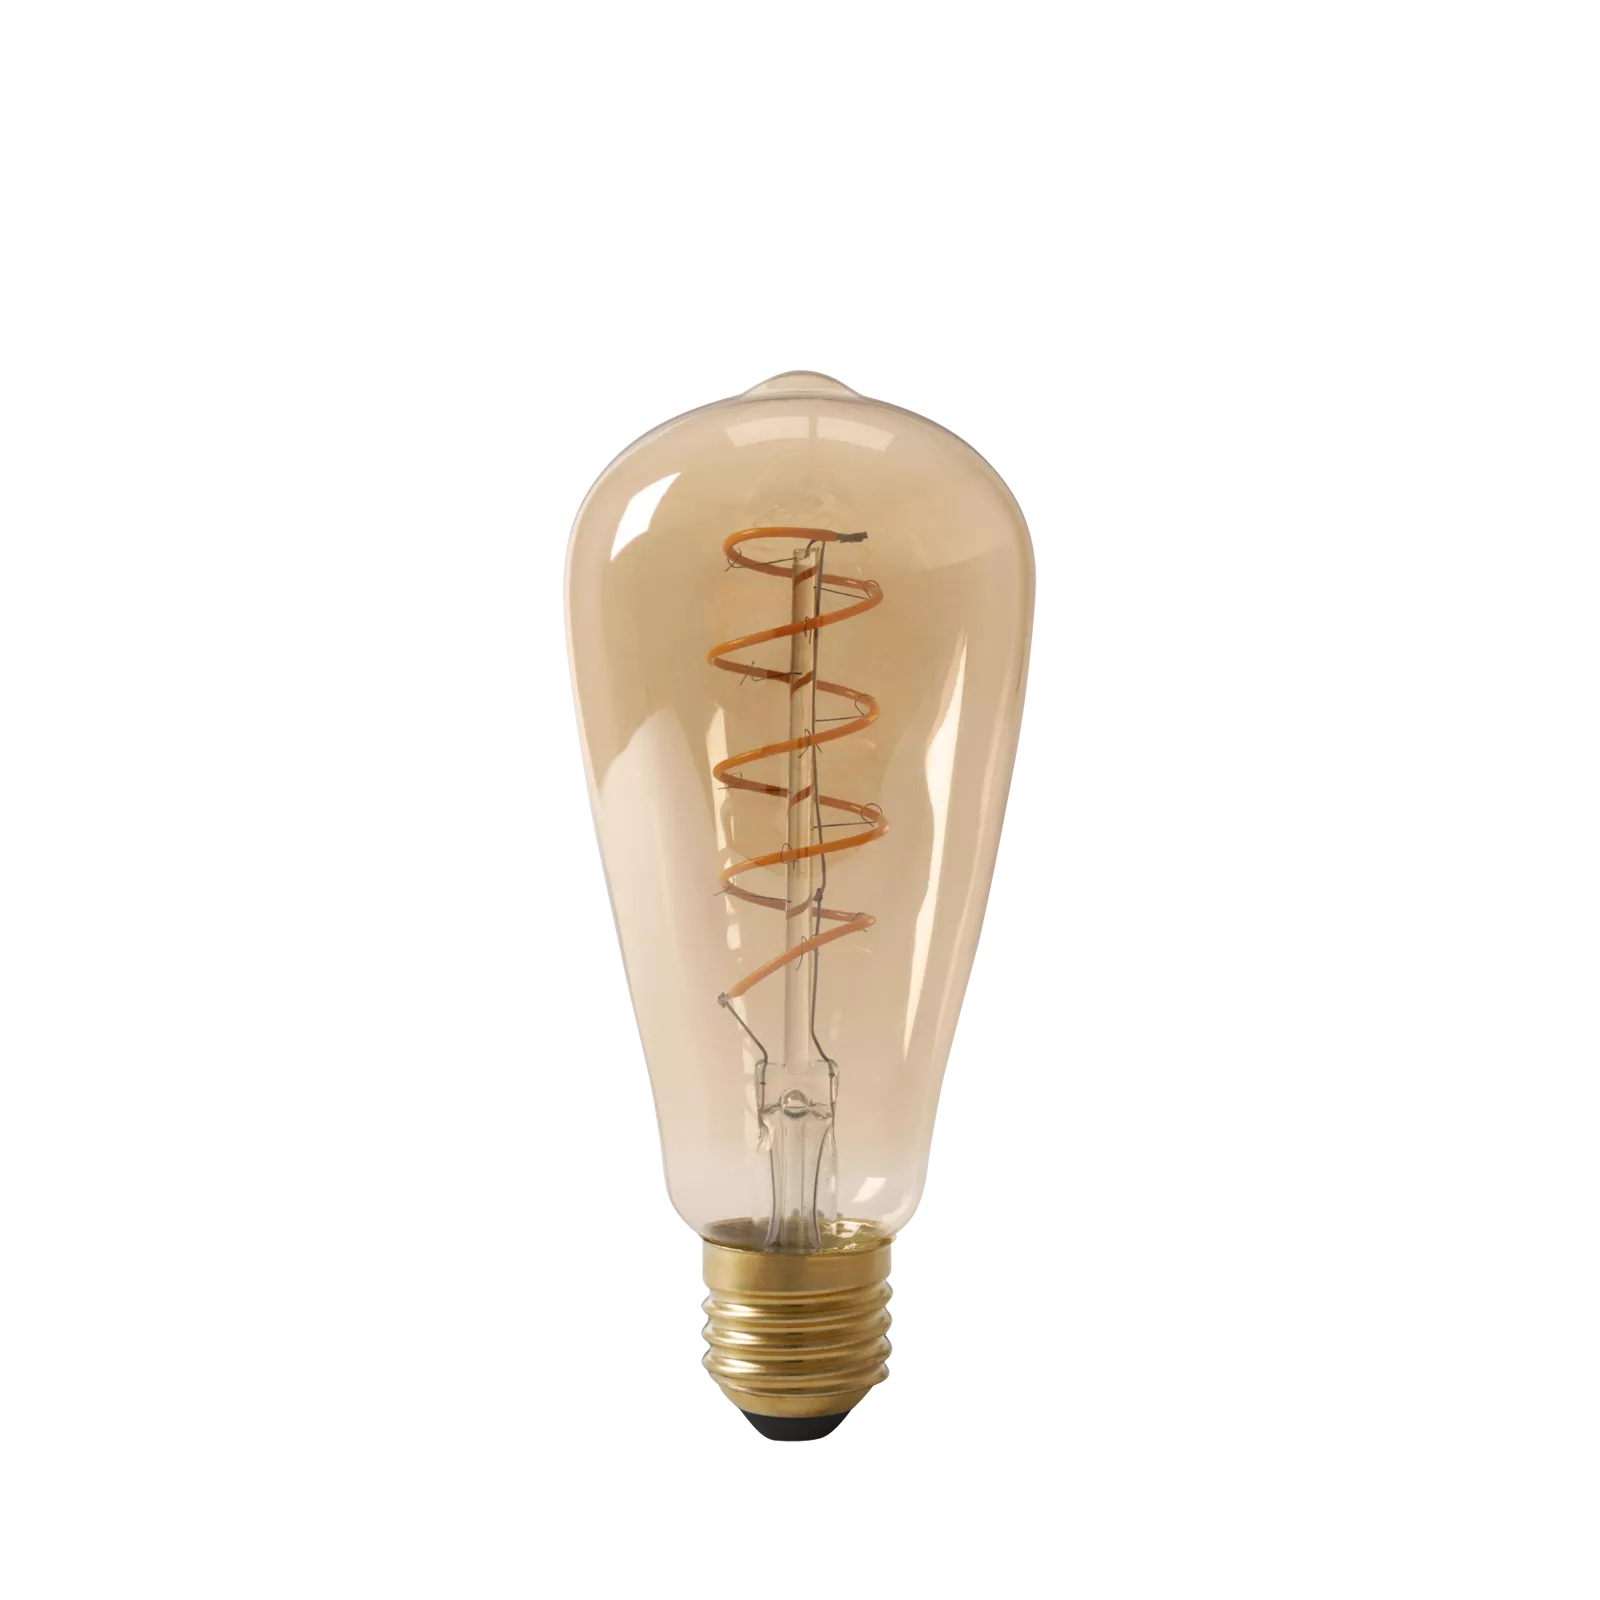 LED lamp Flex Rustic - Gold